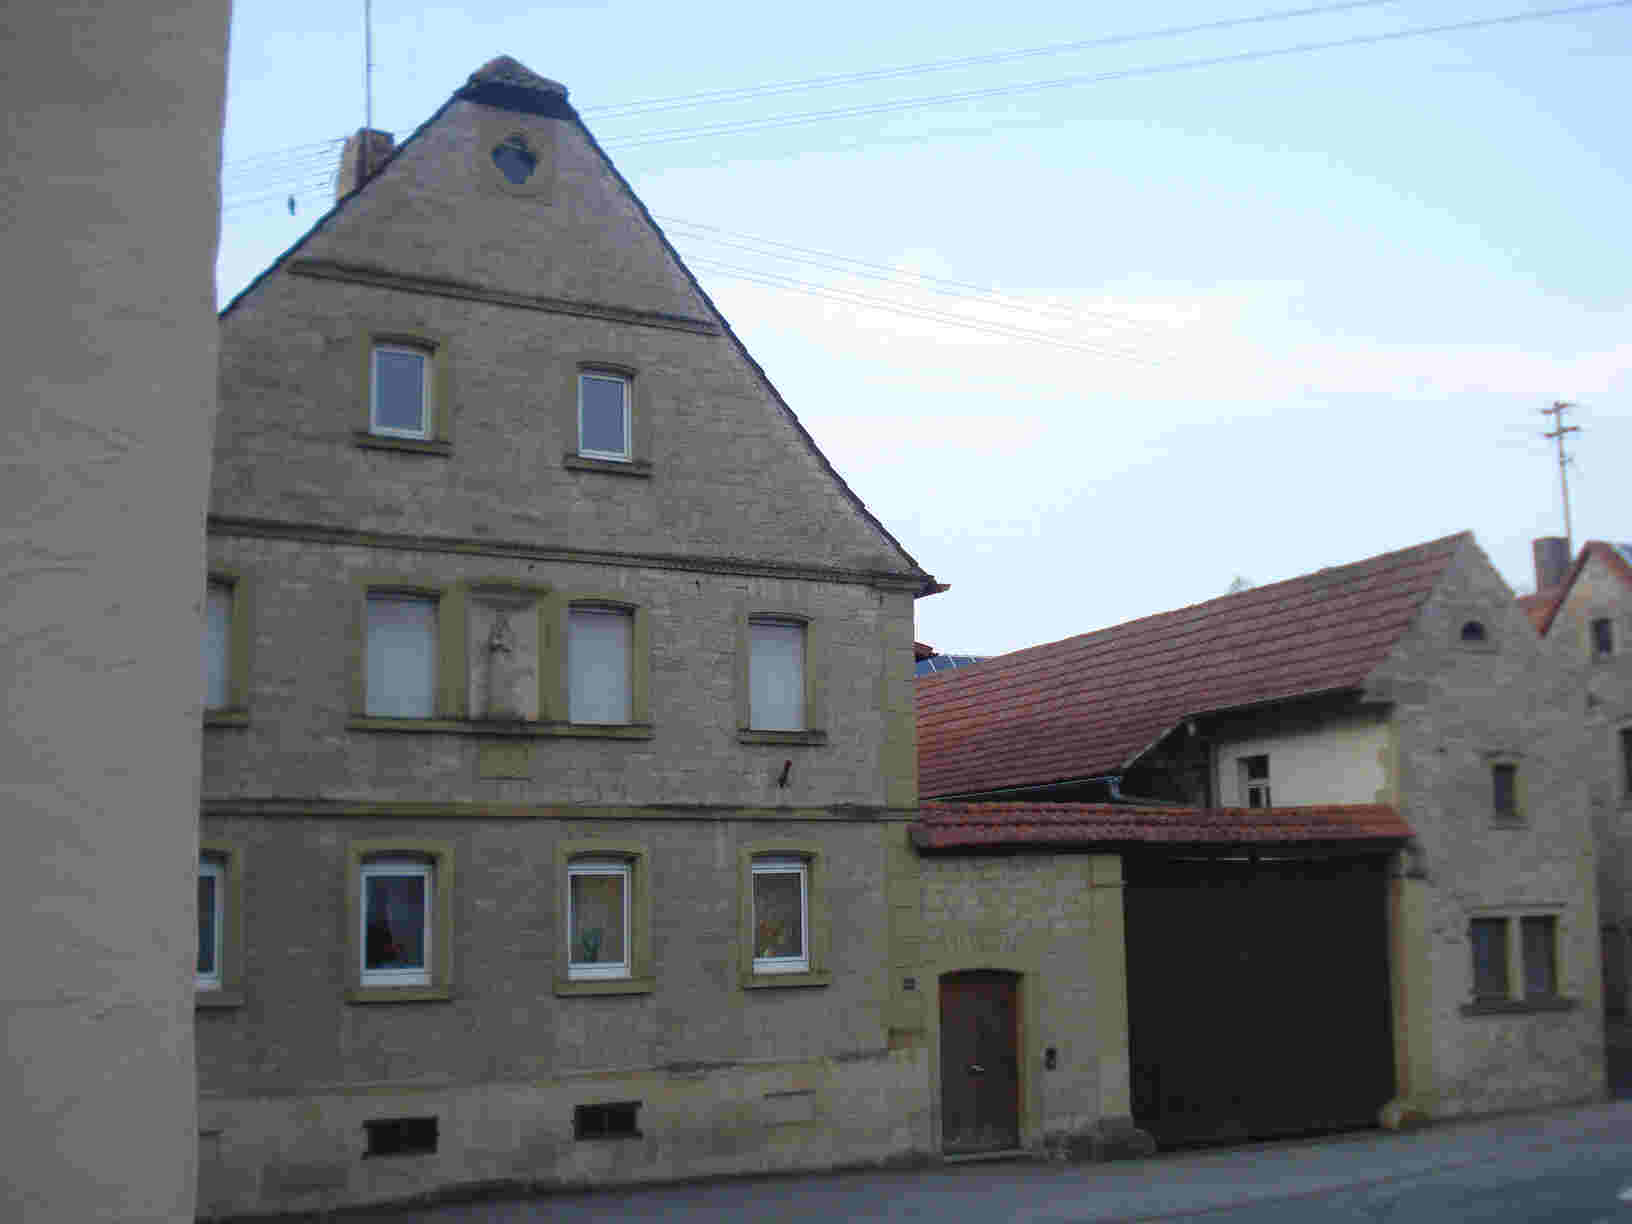 Darstadt Bauernhaus Schloßstraße